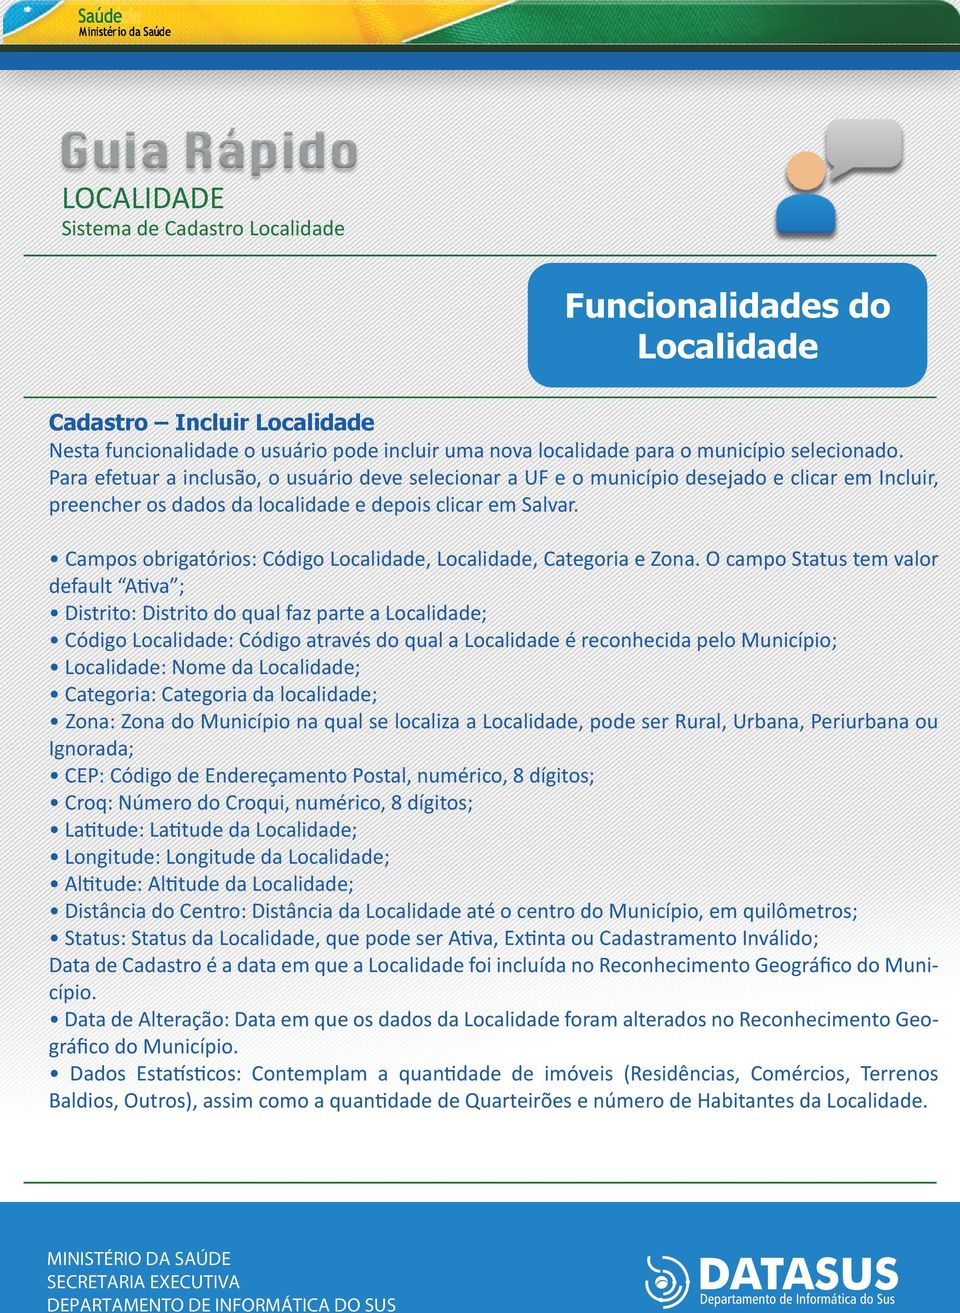 Campos obrigatórios: Código Localidade, Localidade, Categoria e Zona.